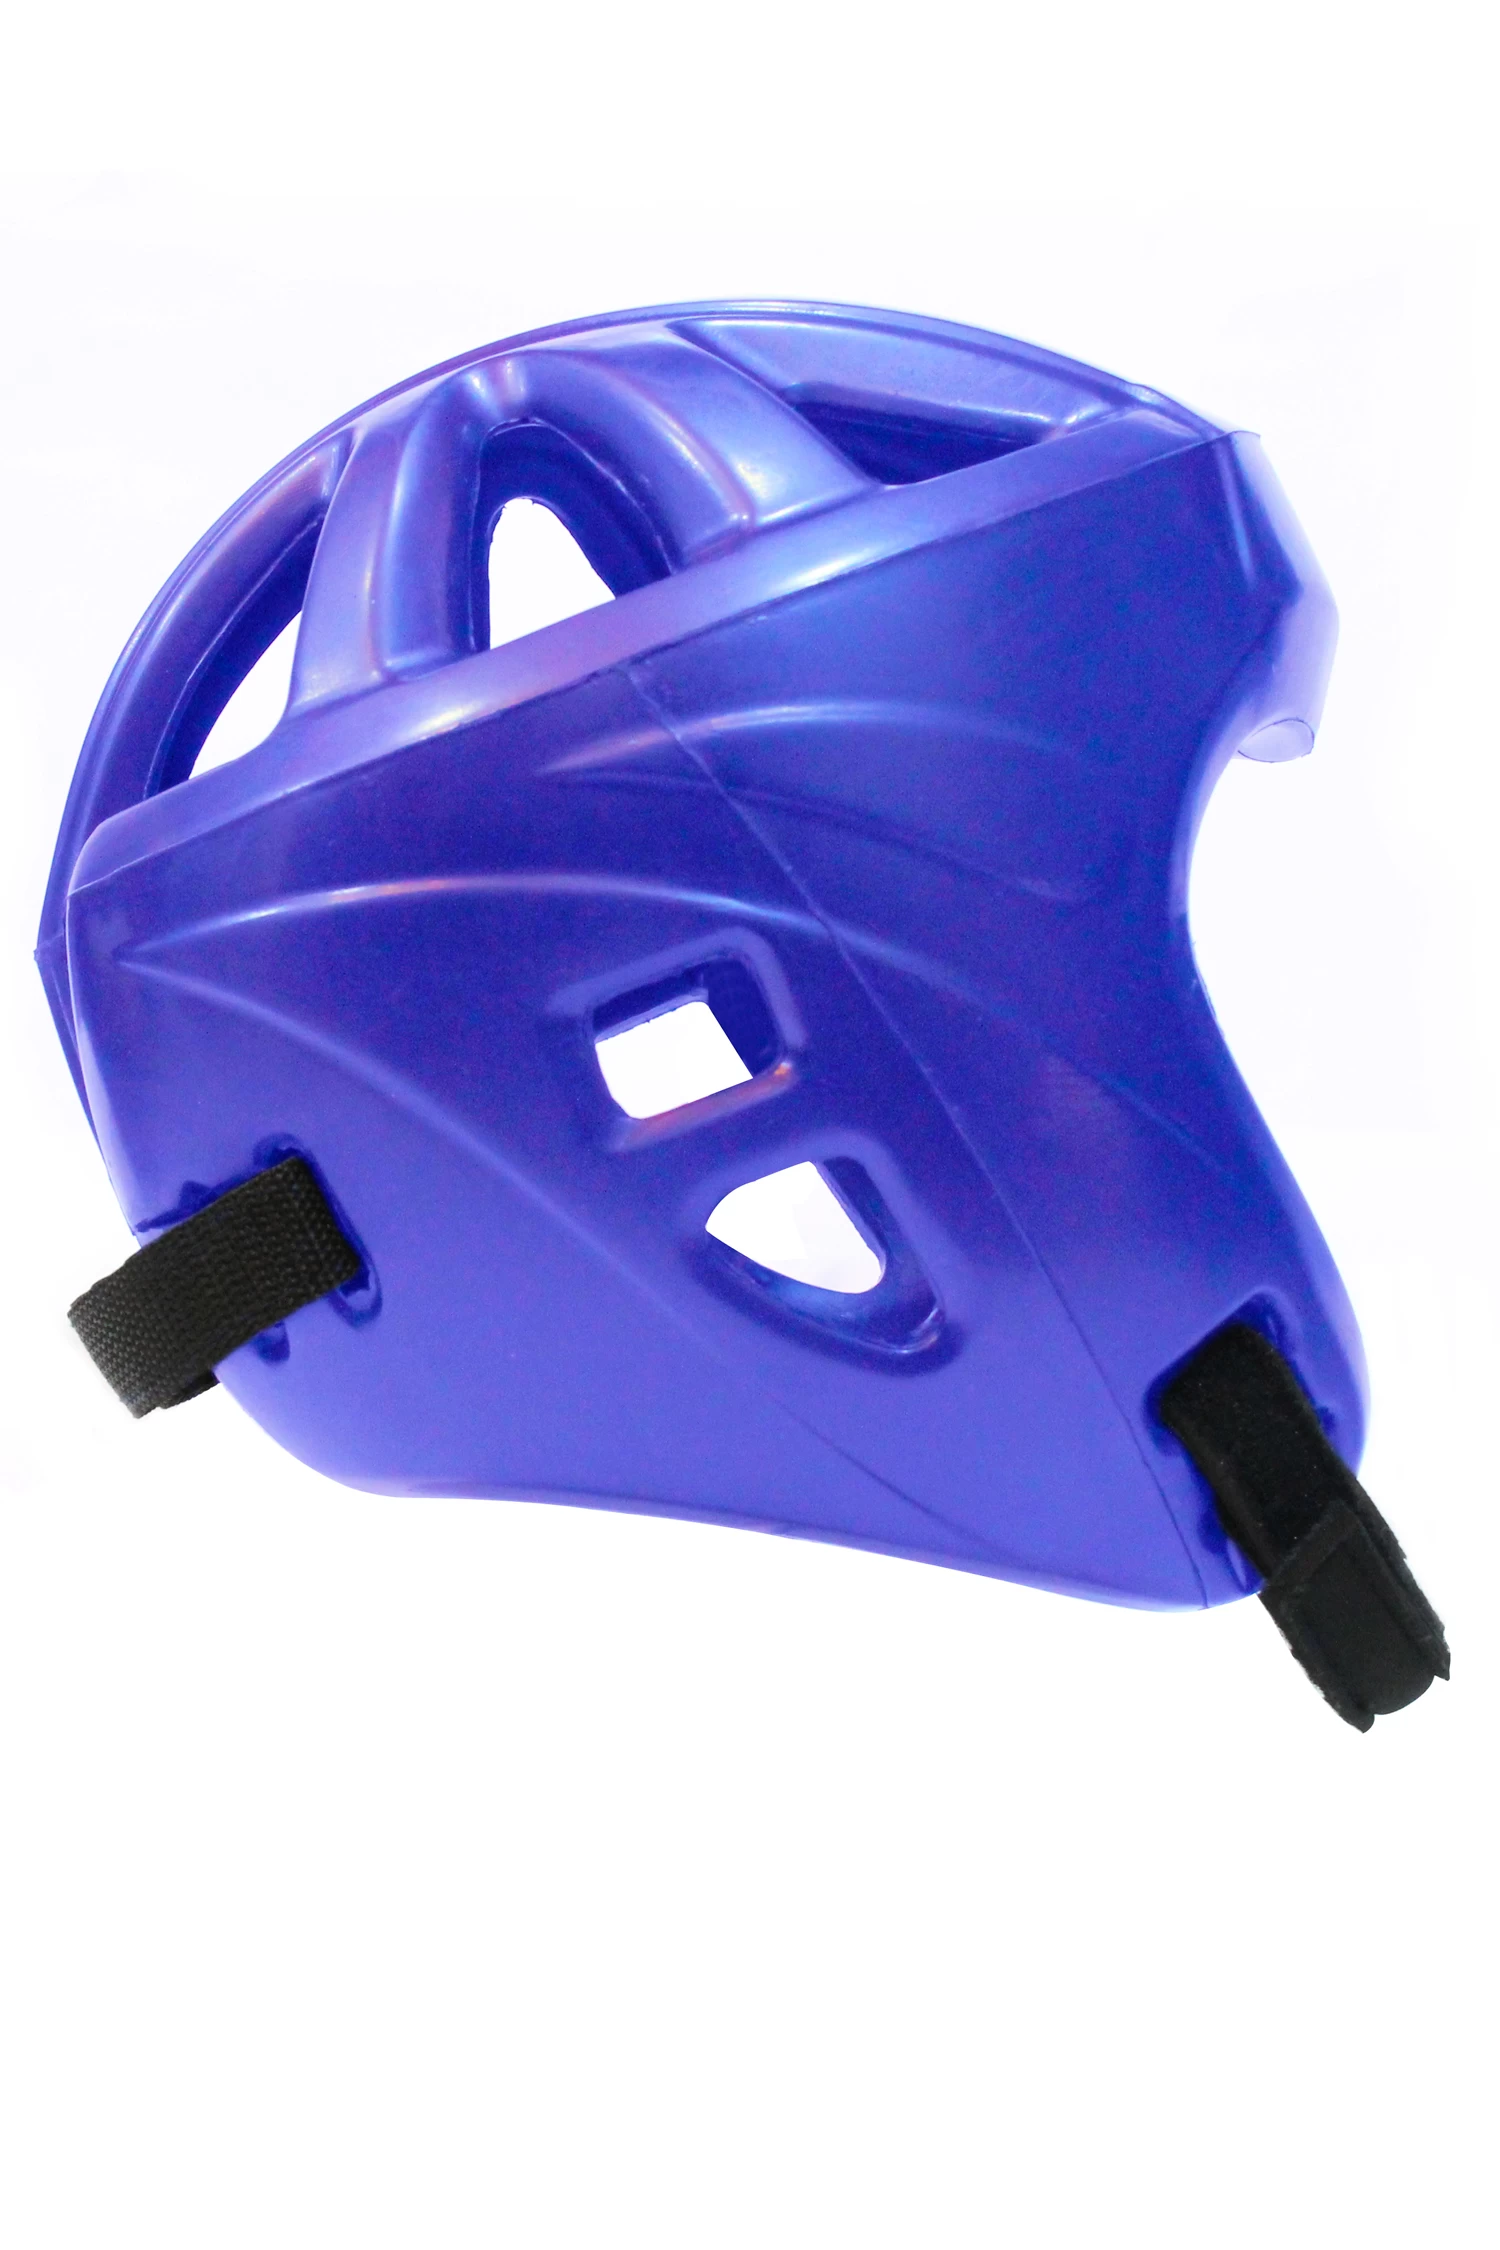 China Fornecedor de capacete de novo estilo de poliuretano PU da China Fábrica de capacete de boxe leve da China Fabricante de capacete de boxe anti-impacto da China fabricante